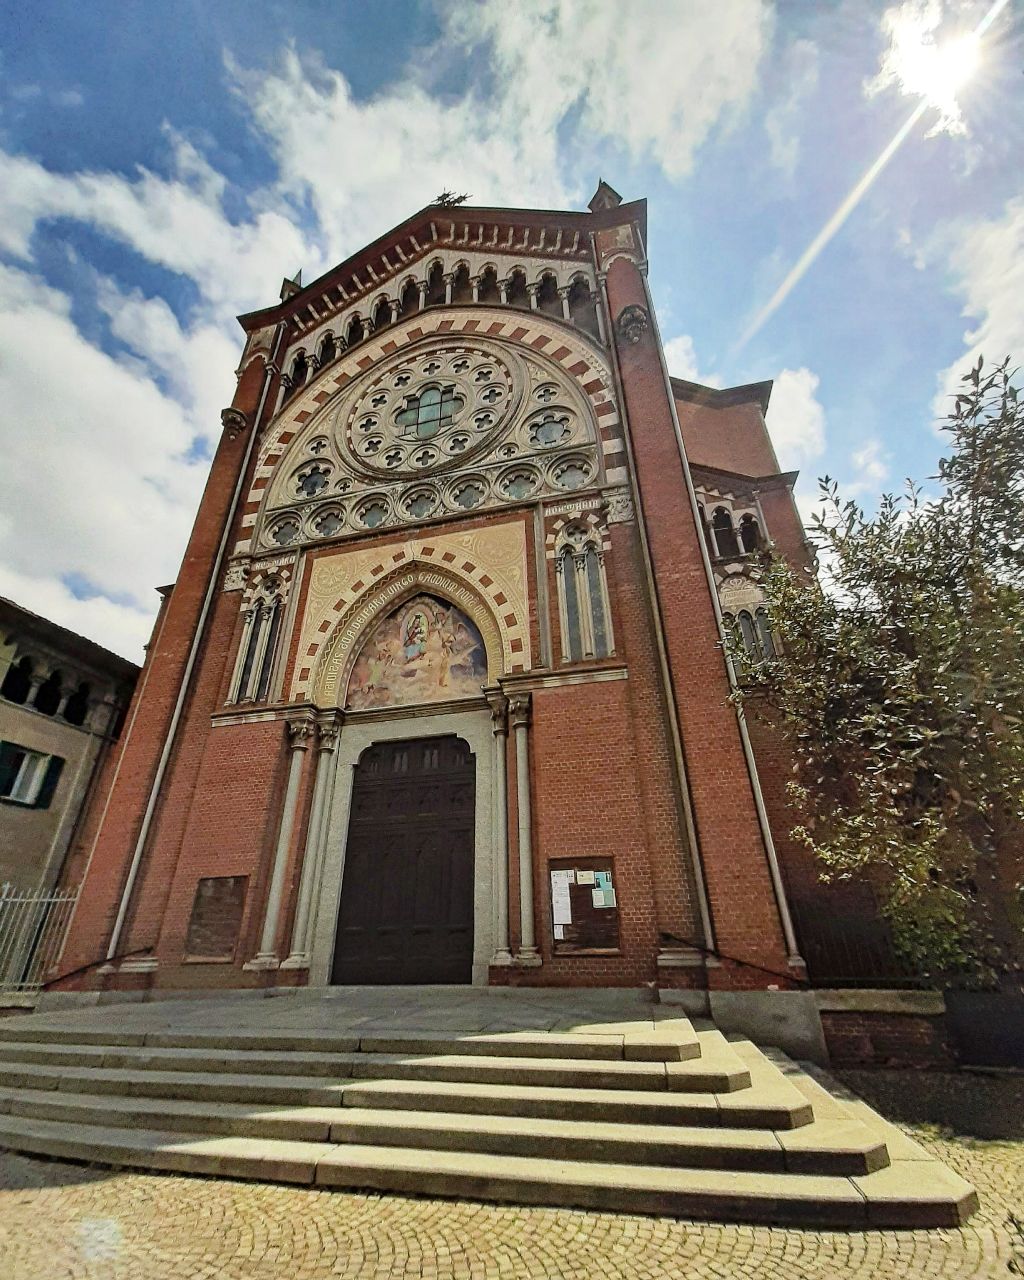 Chiesa Santa Maria delle Pieve - Italy